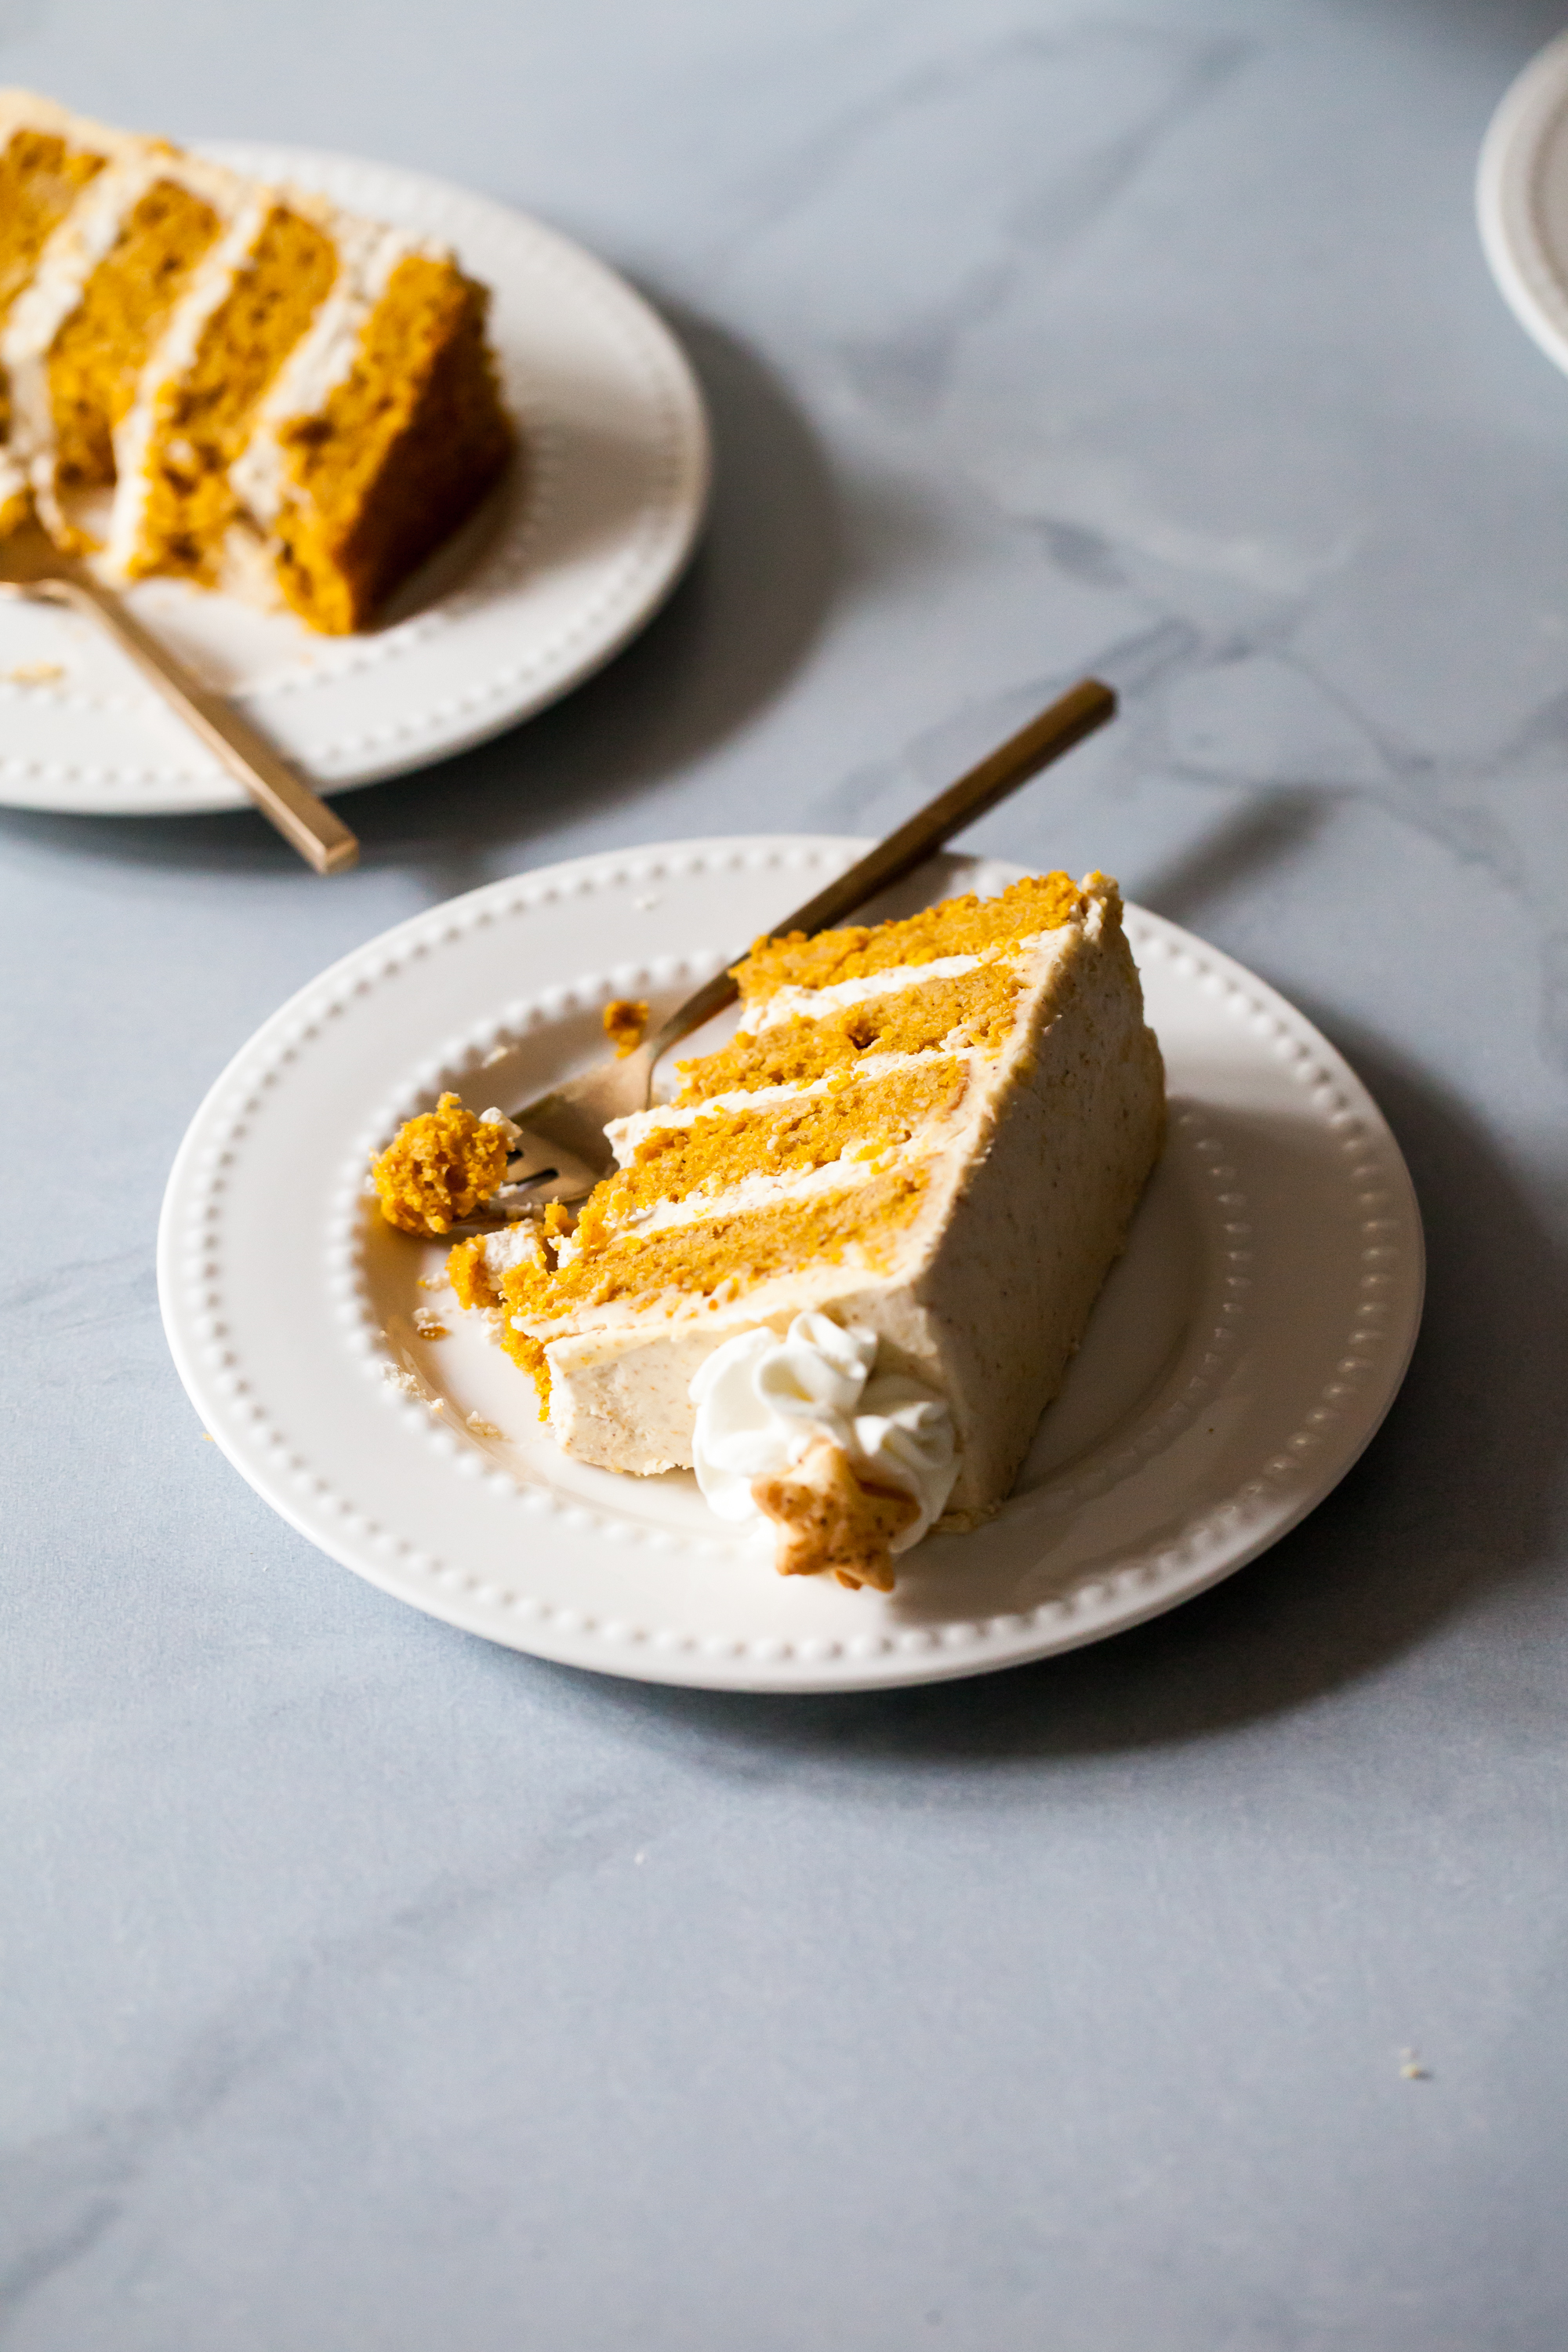 Pumpkin Pie Layer Cake Recipe